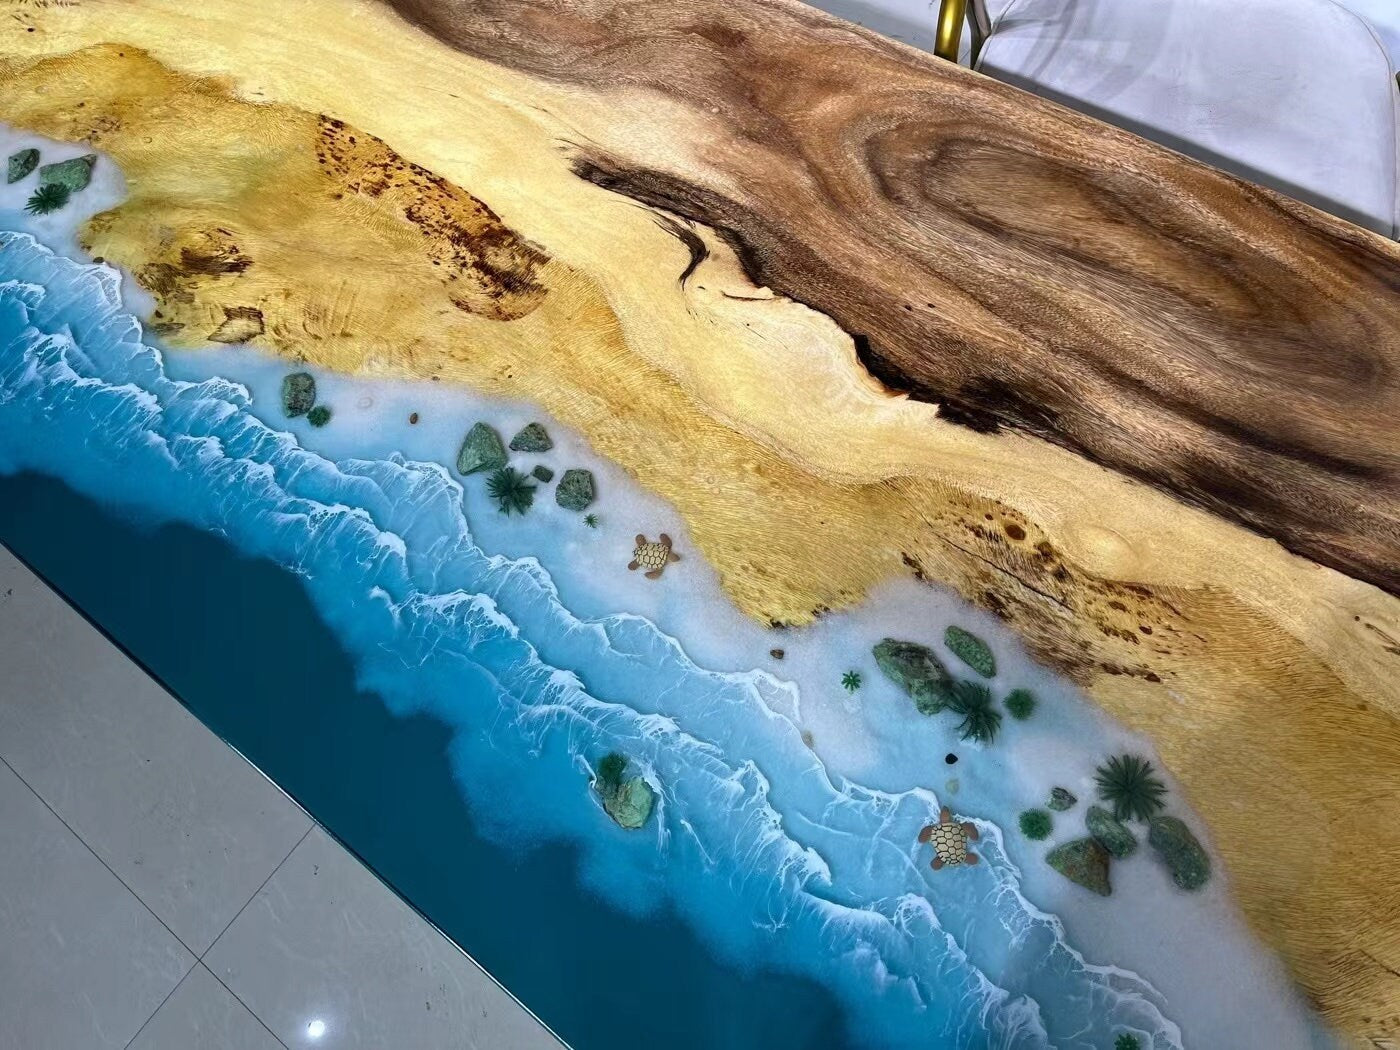 نهر البحر الأزرق الجديد أثاث غرفة الطعام المحيط الأزرق الحديث طاولة من خشب الجوز وراتنجات الإيبوكسي